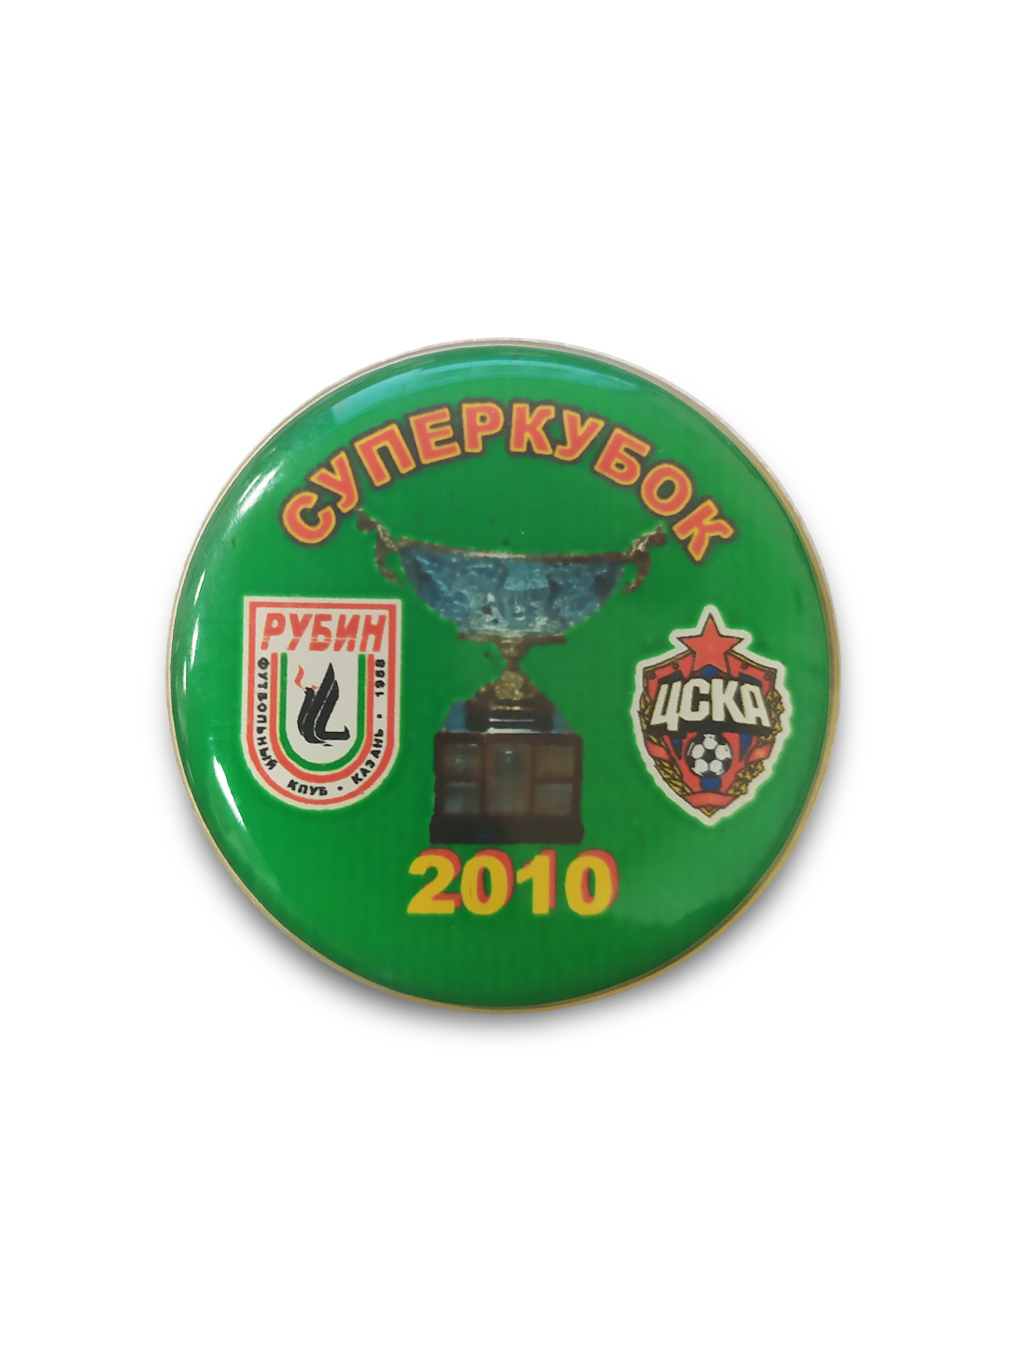 Коллекционный значок Суперкубок России 2010 Рубин -ЦСКА от Cskashop